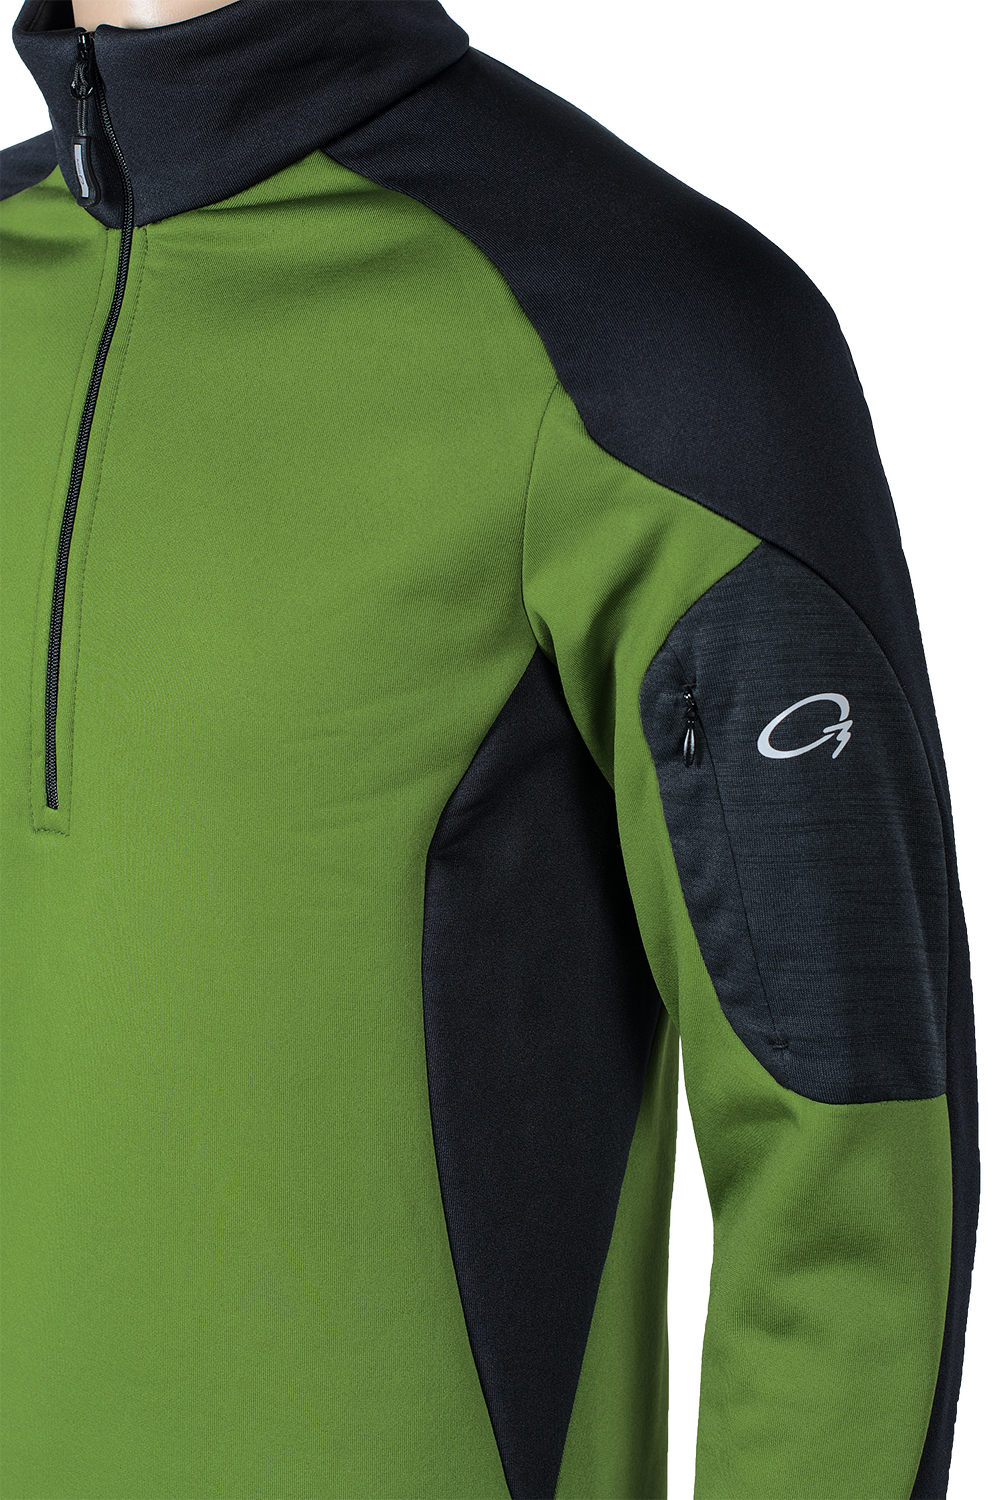 Мужской пуловер термобелье Coil купить в магазине термобелья и спортивной одежды O3 Ozone